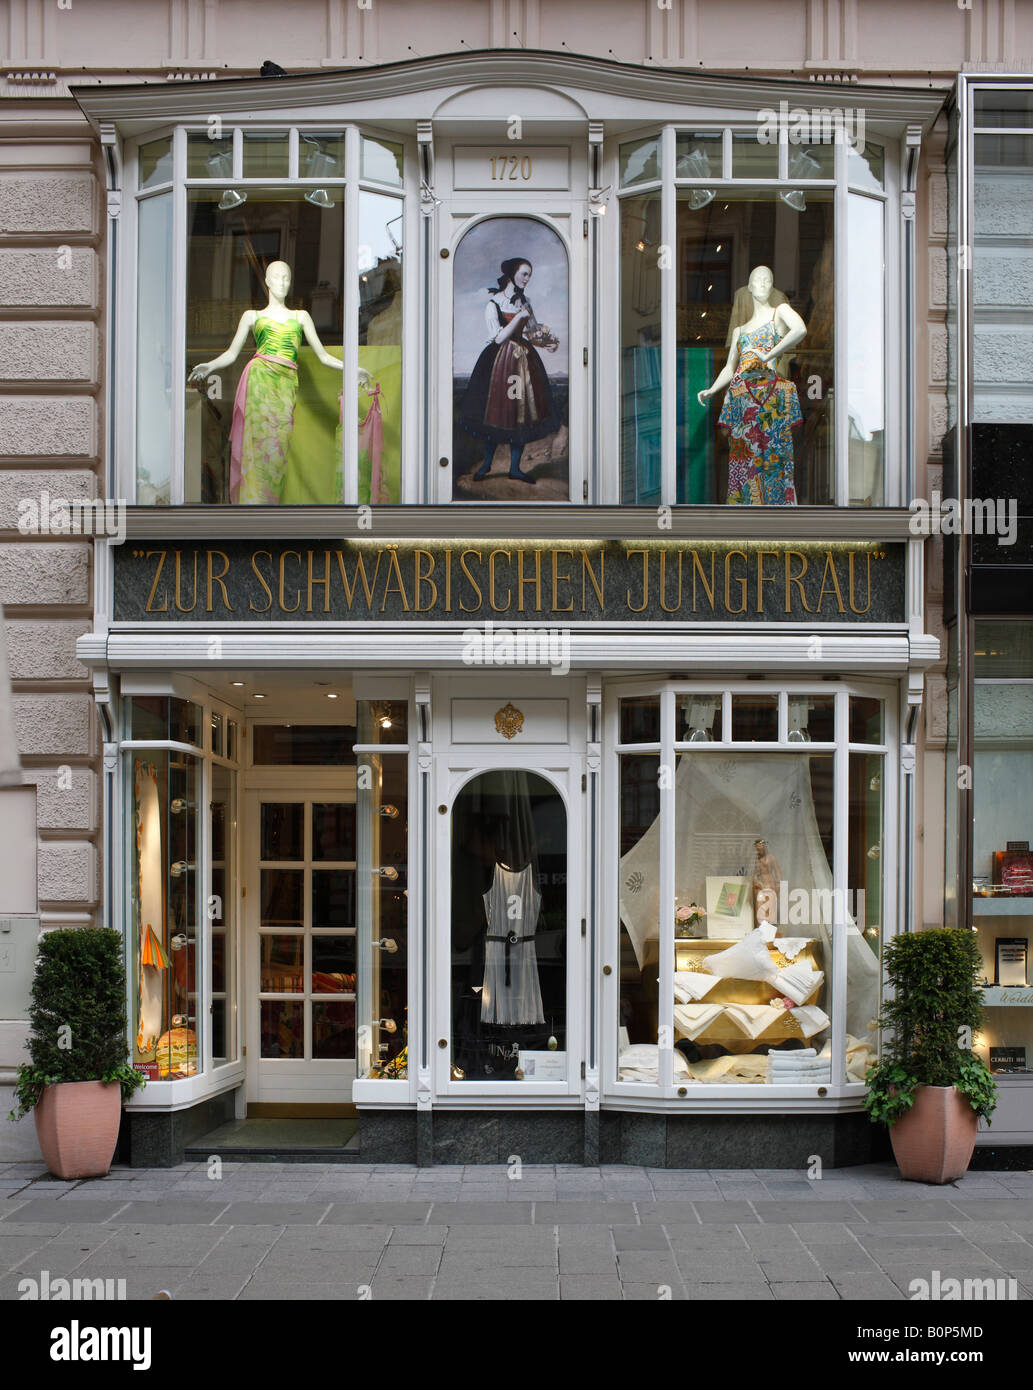 Wien, Graben, Geschäft Zur Schwäbischen Jungfrau', Schaufenster Foto de stock